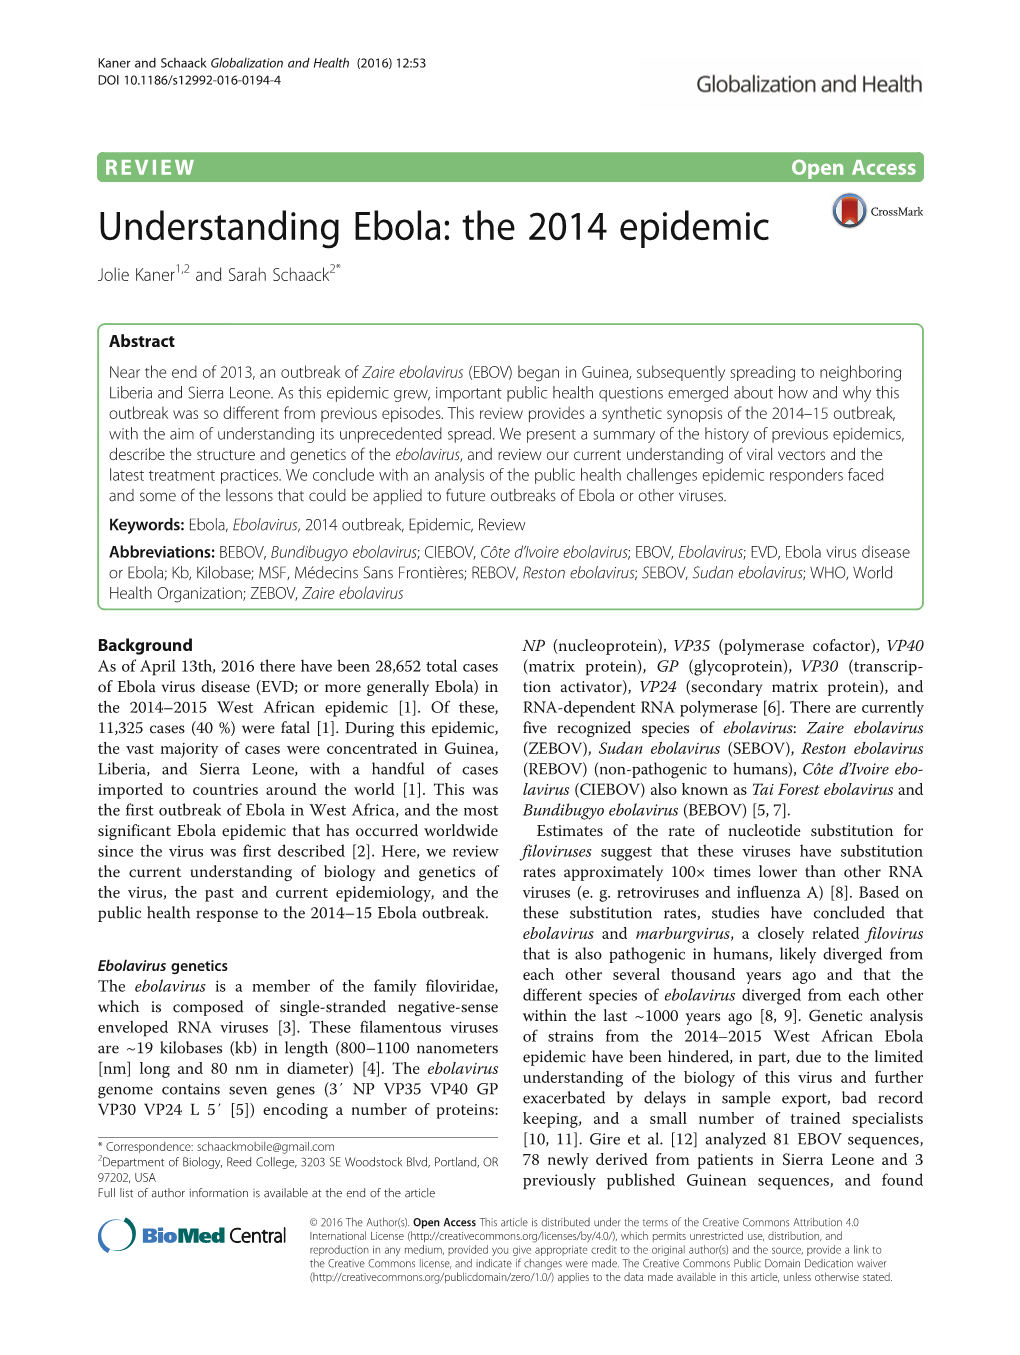 Understanding Ebola: the 2014 Epidemic Jolie Kaner1,2 and Sarah Schaack2*